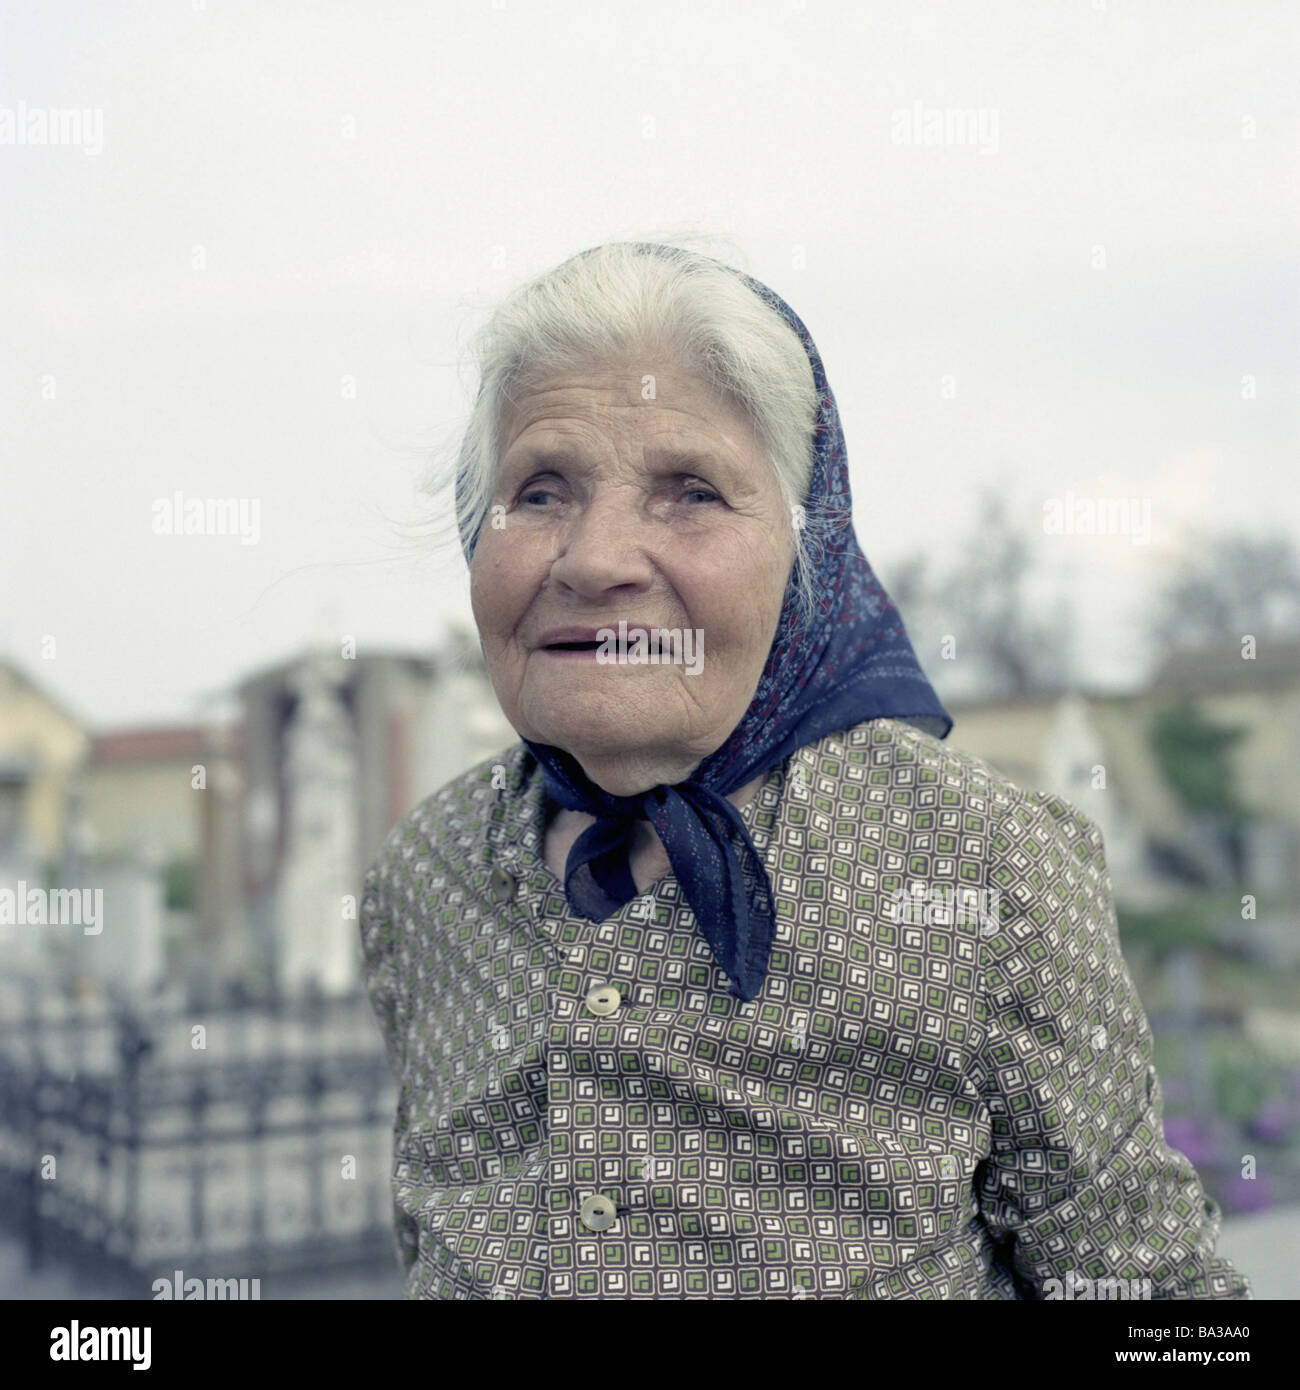 Roumanie Ciacovar aveuglément senior fichu portrait l'Europe de l'Est Balkans personnes femmes roumaines-portrait femme personnes âgées de 70 à 80 Banque D'Images